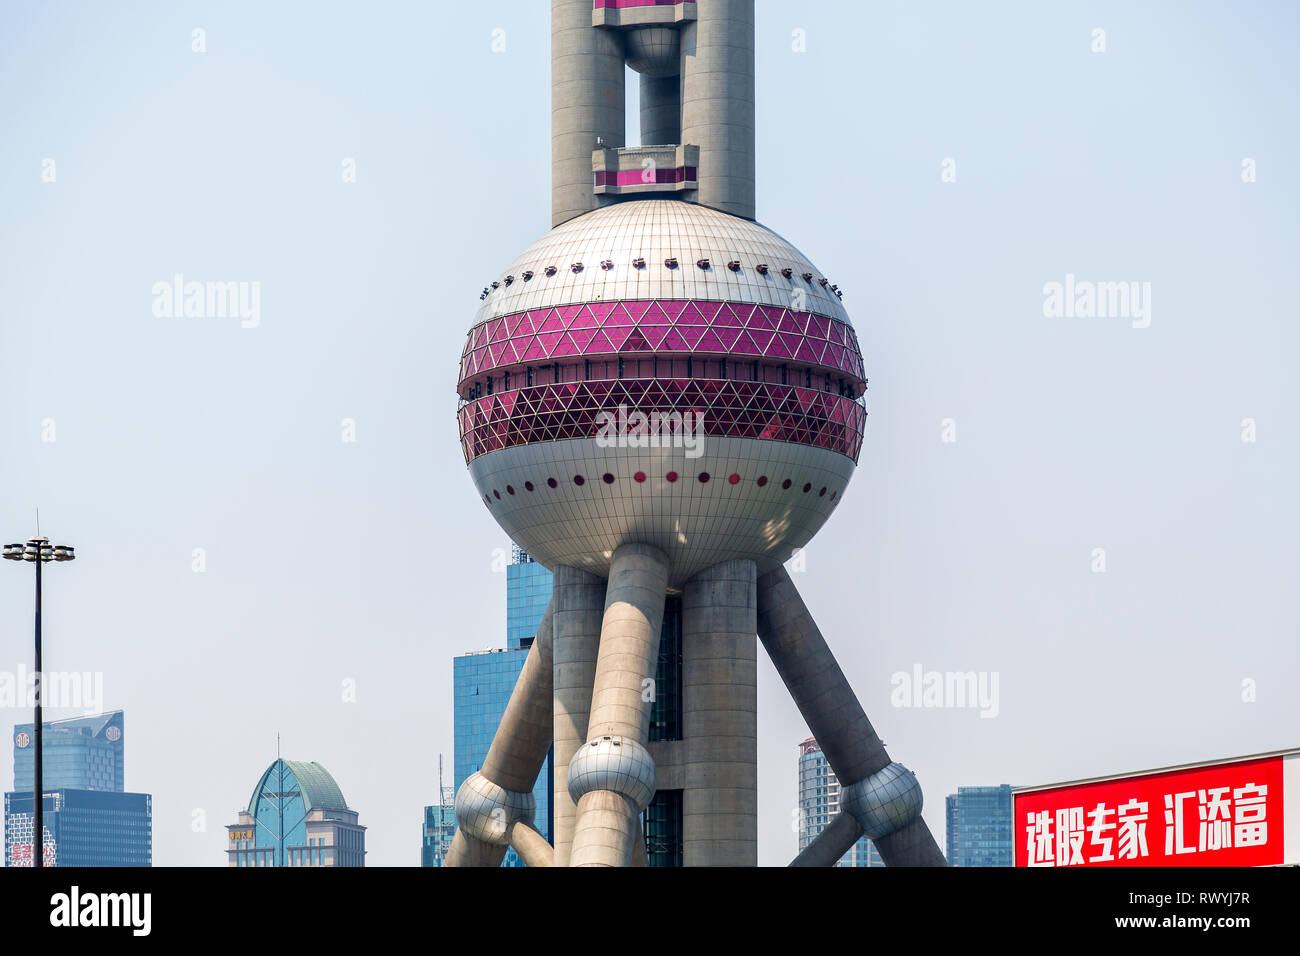 Dettaglio della sfera inferiore della Oriental Pearl Tower, Pudong New Area, Shanghai, Cina. Foto Stock